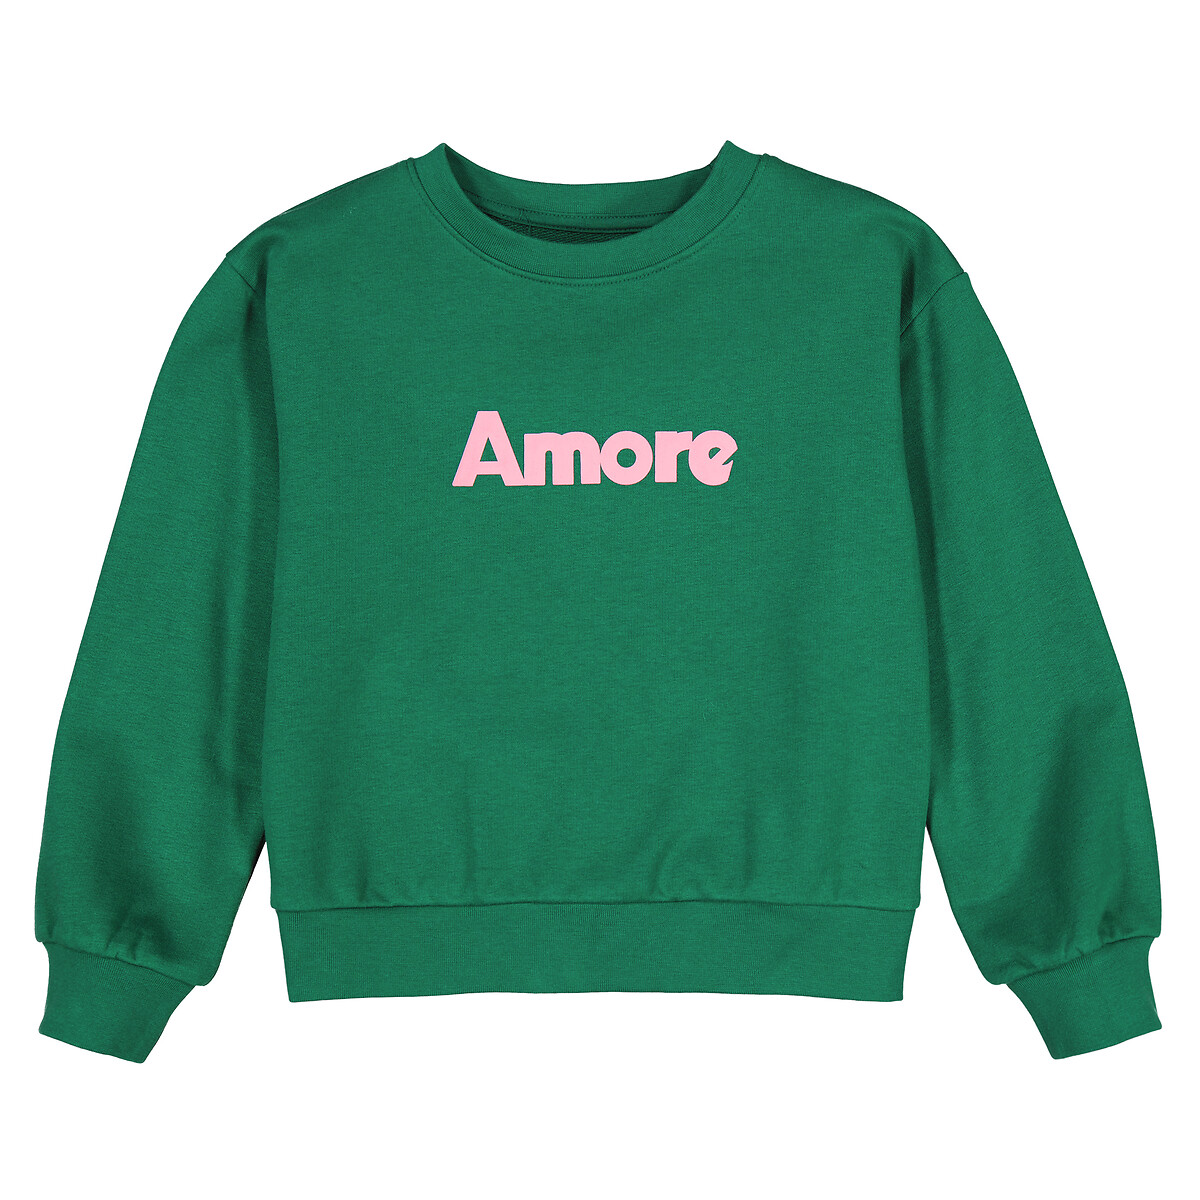 Свитшот с круглым вырезом из мольтона с надписью Amore  4 года - 102 см зеленый LaRedoute, размер 4 года - 102 см - фото 3